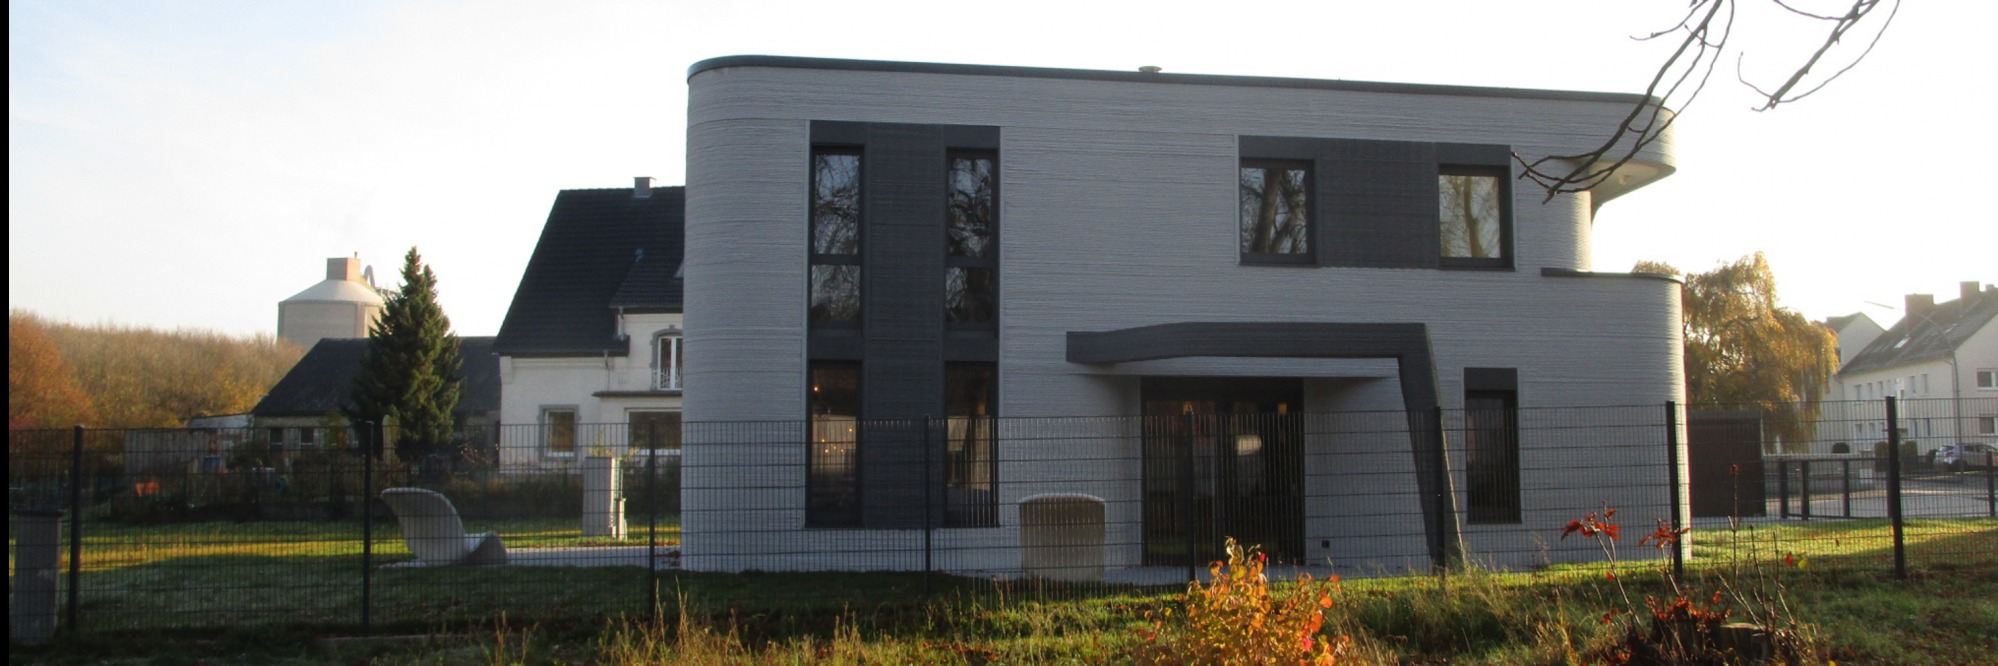 Die Zukunft des Bauens: Zu Gast im ersten 3D-gedruckten Wohnhaus Deutschlands